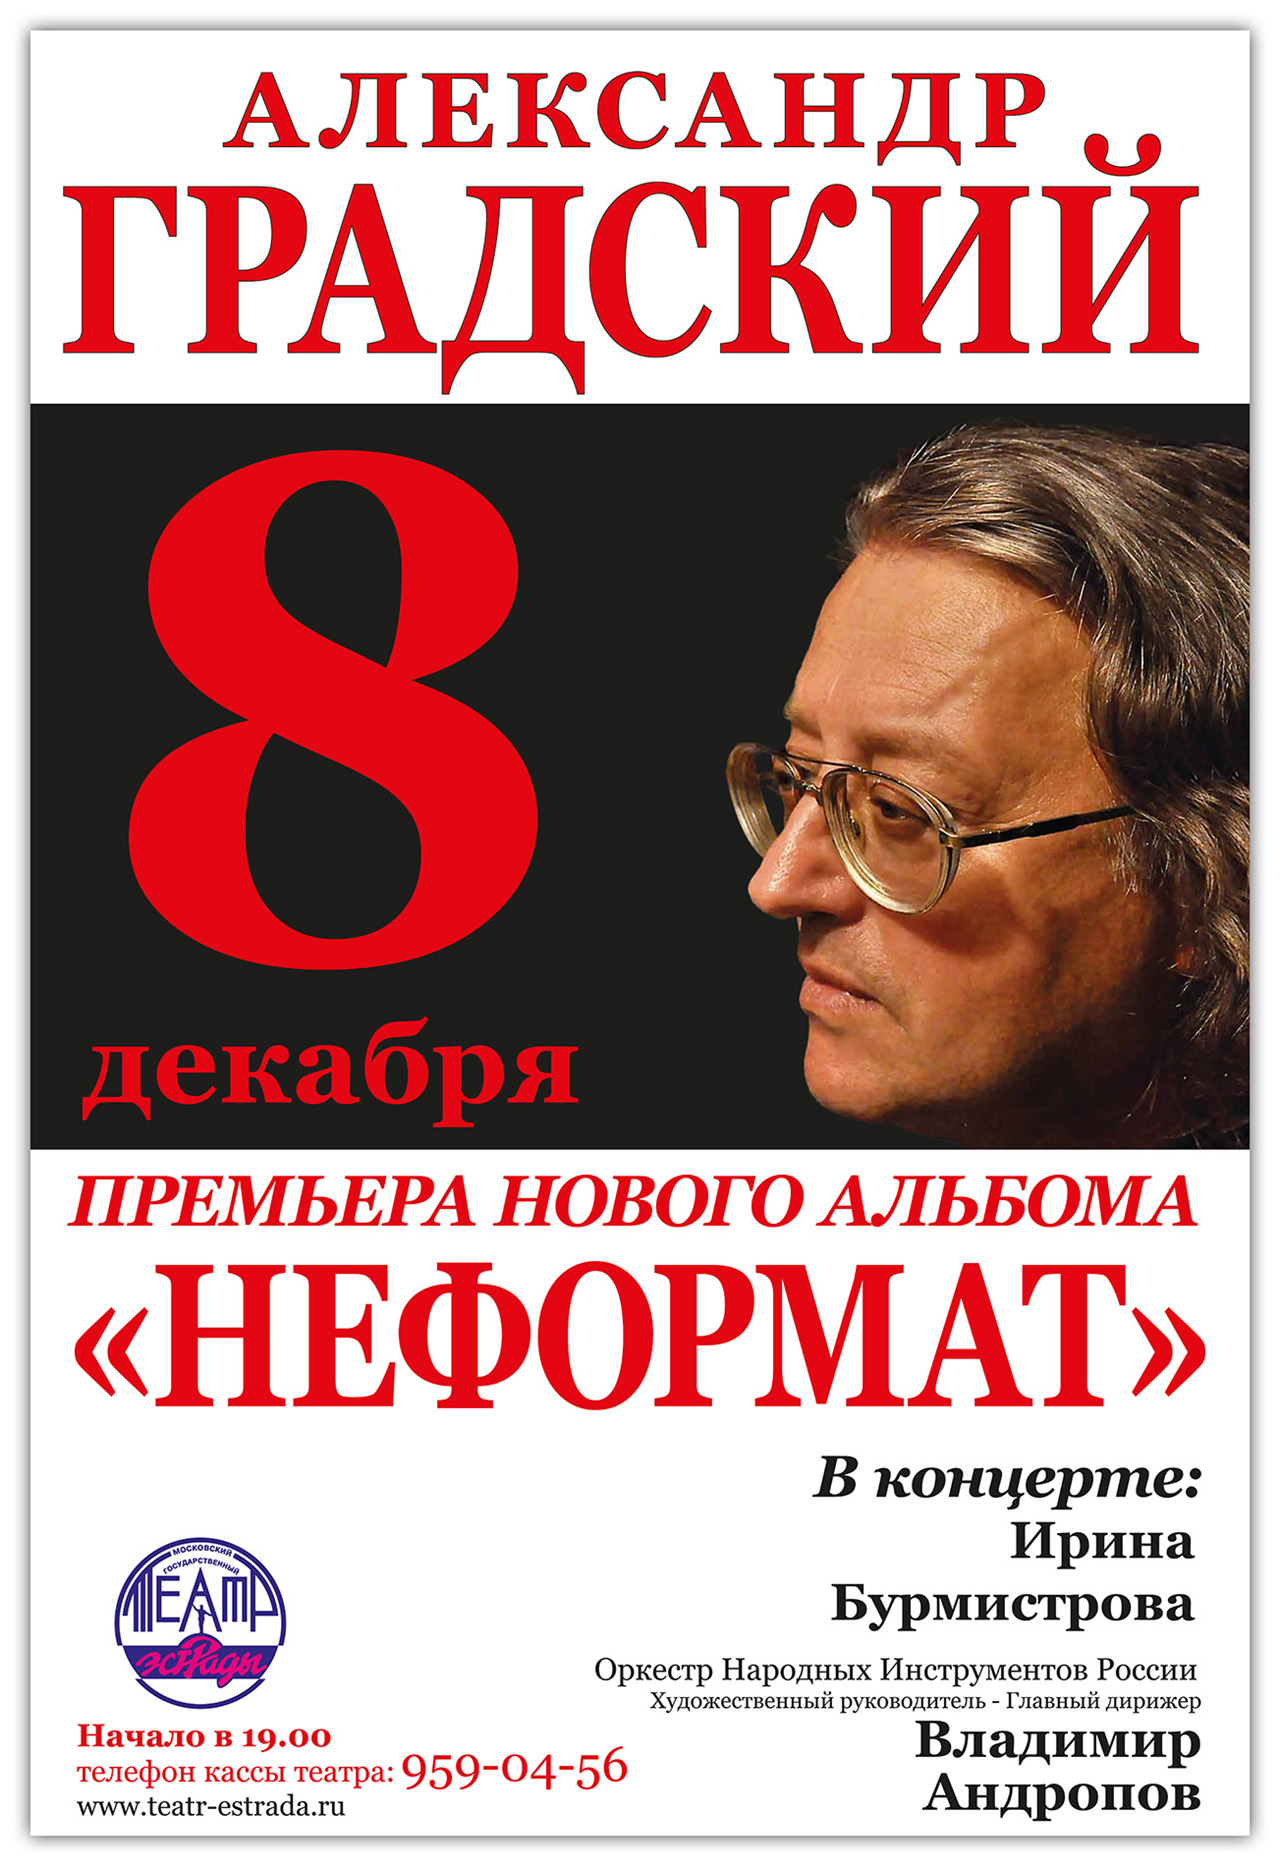 Плакат для Александра Градского